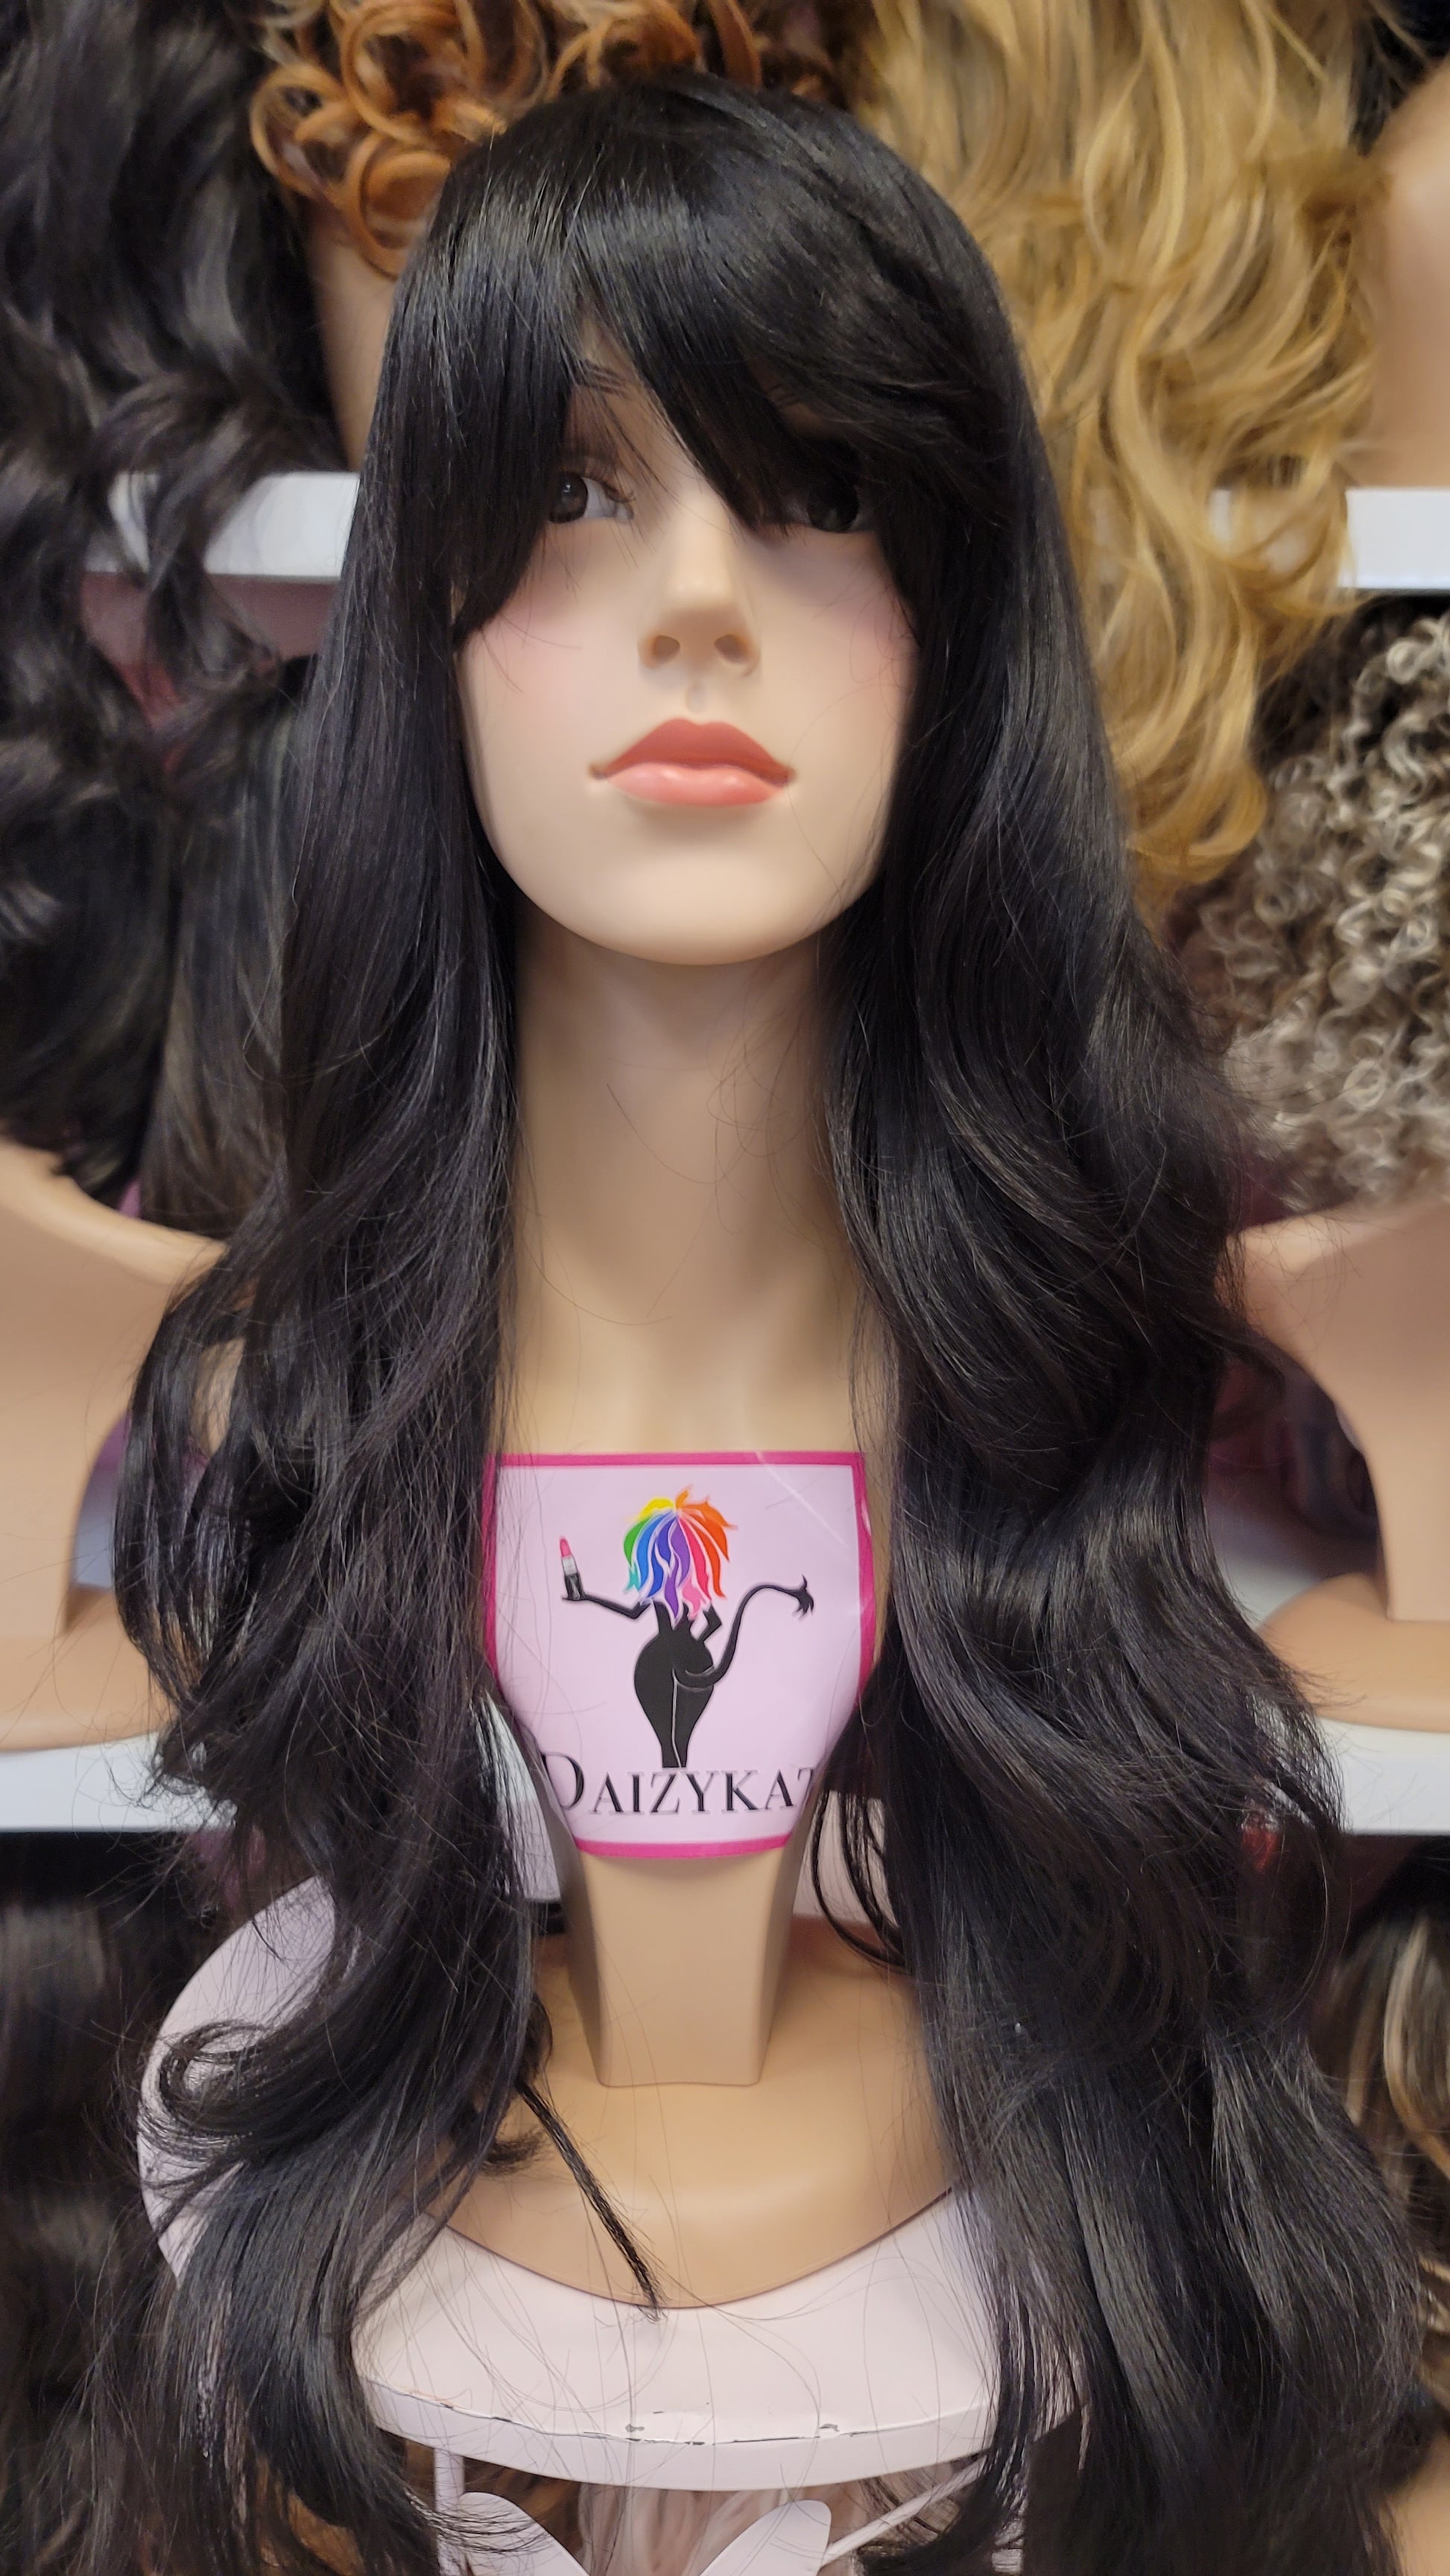 208 Selena - Classy Bangs Wig - 2 - DaizyKat Cosmetics 208 Selena - Classy Bangs Wig - 2 DaizyKat Cosmetics Wigs